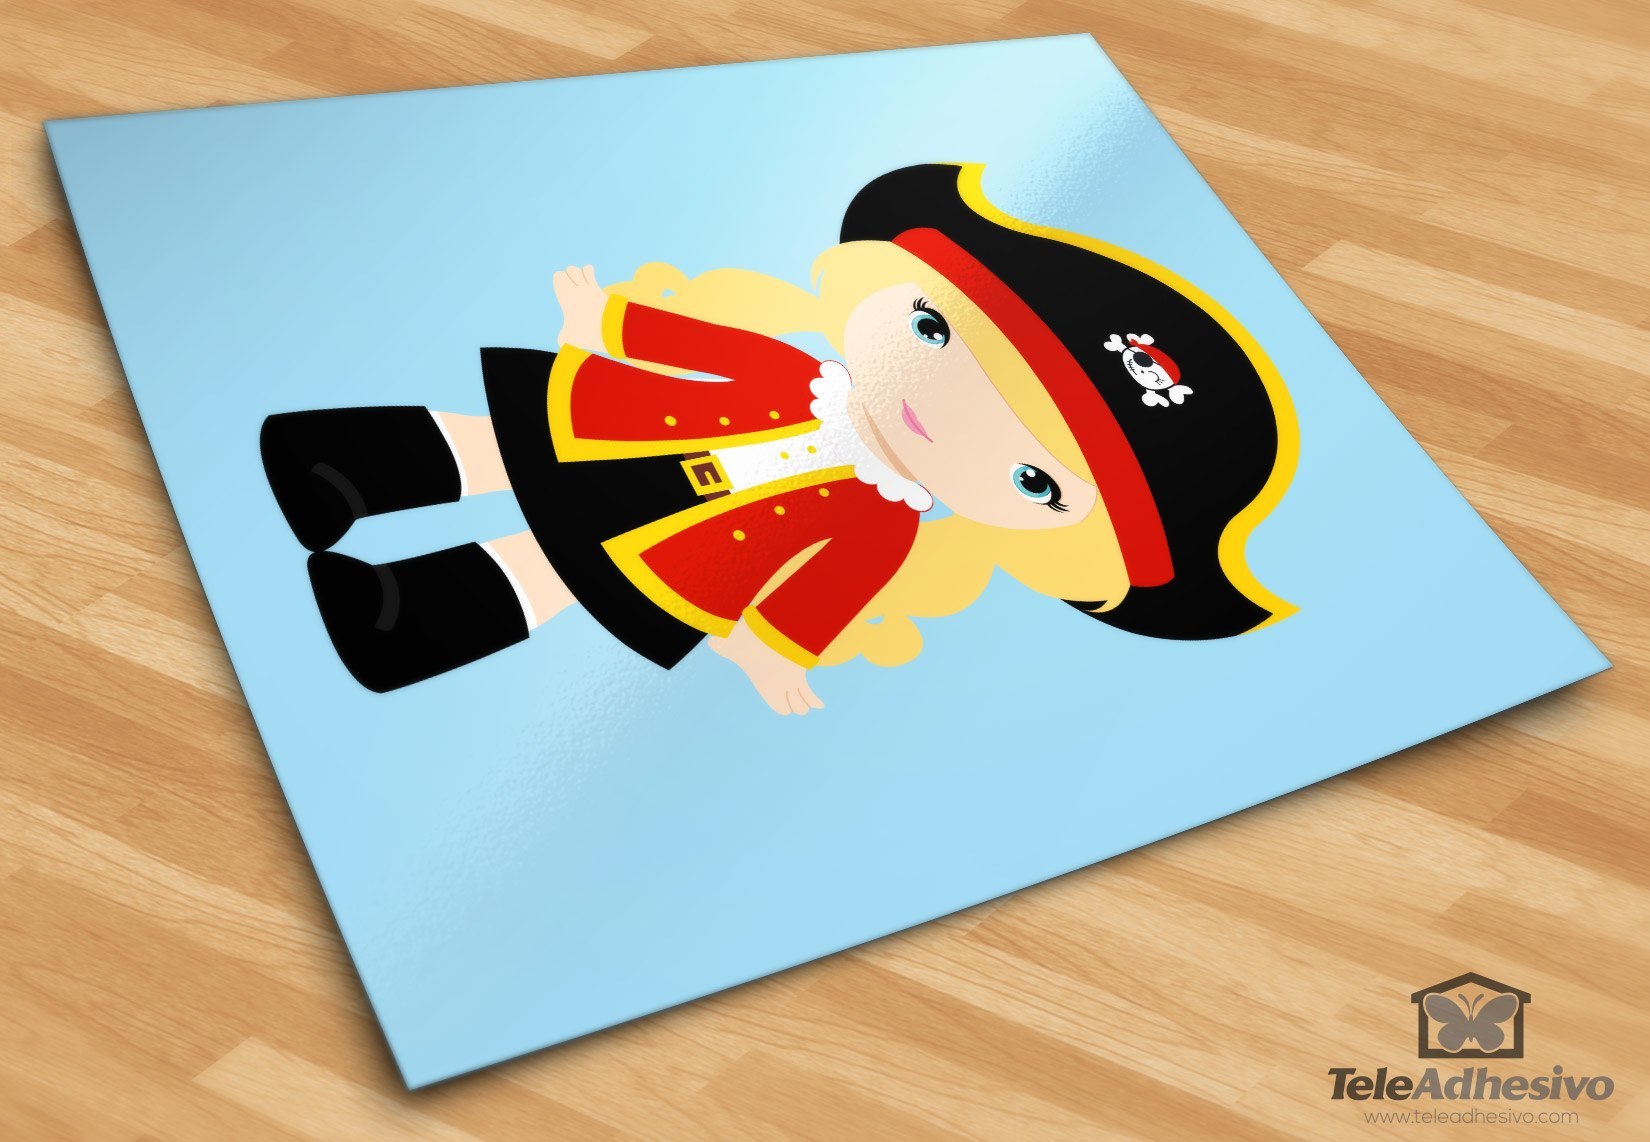 Stickers pour enfants: Capitaine Rouge